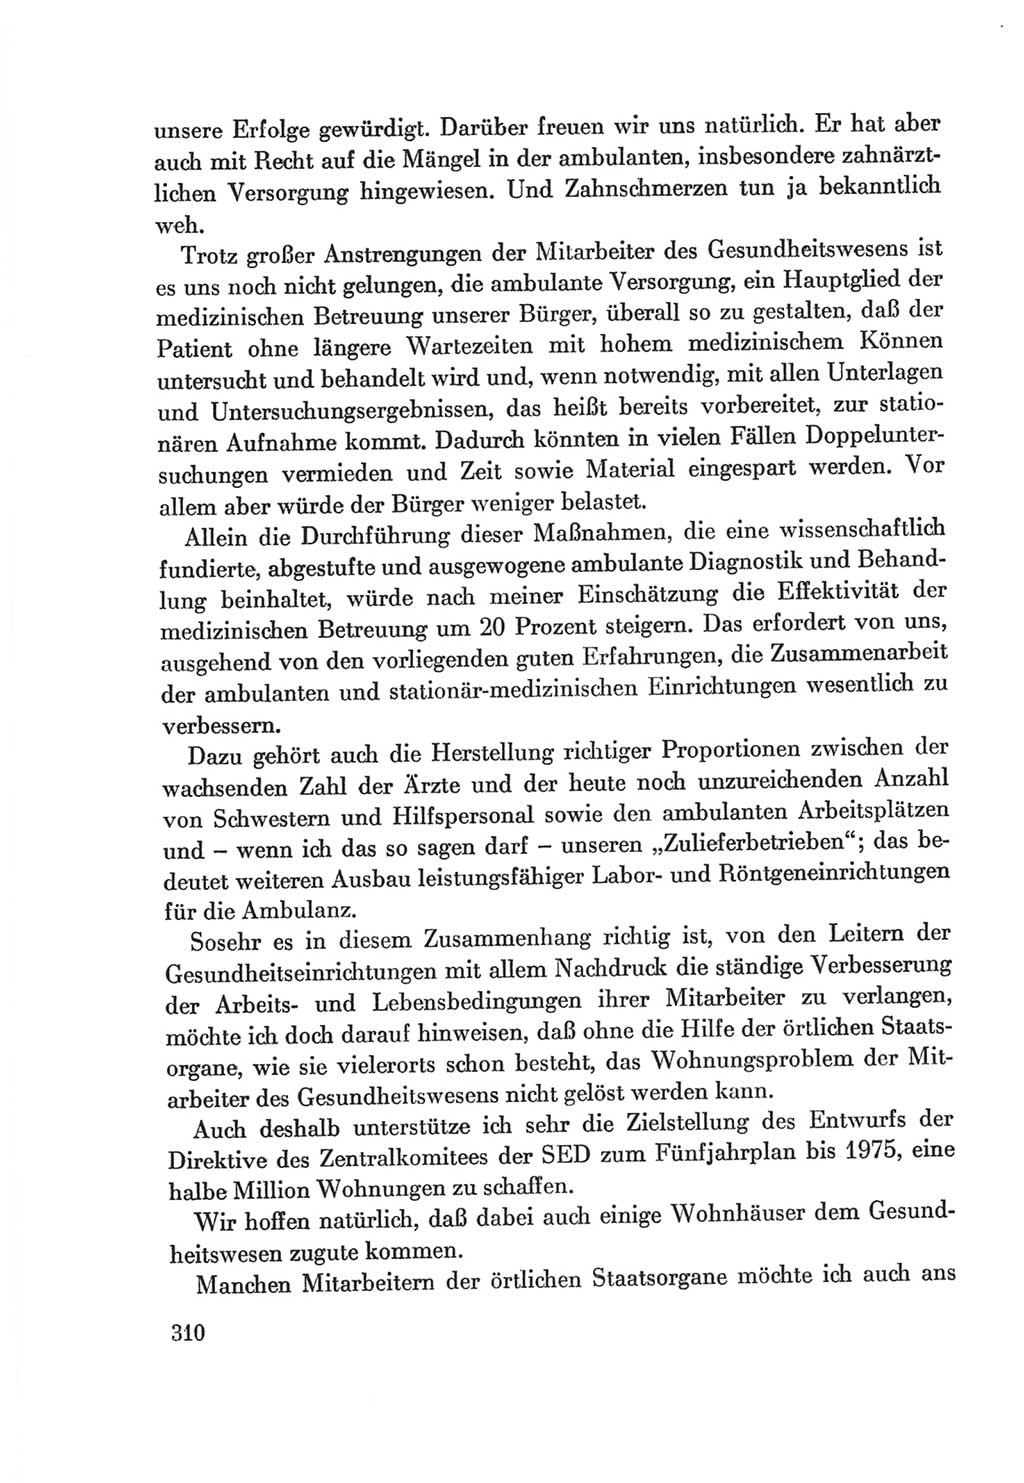 Protokoll der Verhandlungen des Ⅷ. Parteitages der Sozialistischen Einheitspartei Deutschlands (SED) [Deutsche Demokratische Republik (DDR)] 1971, Band 1, Seite 310 (Prot. Verh. Ⅷ. PT SED DDR 1971, Bd. 1, S. 310)